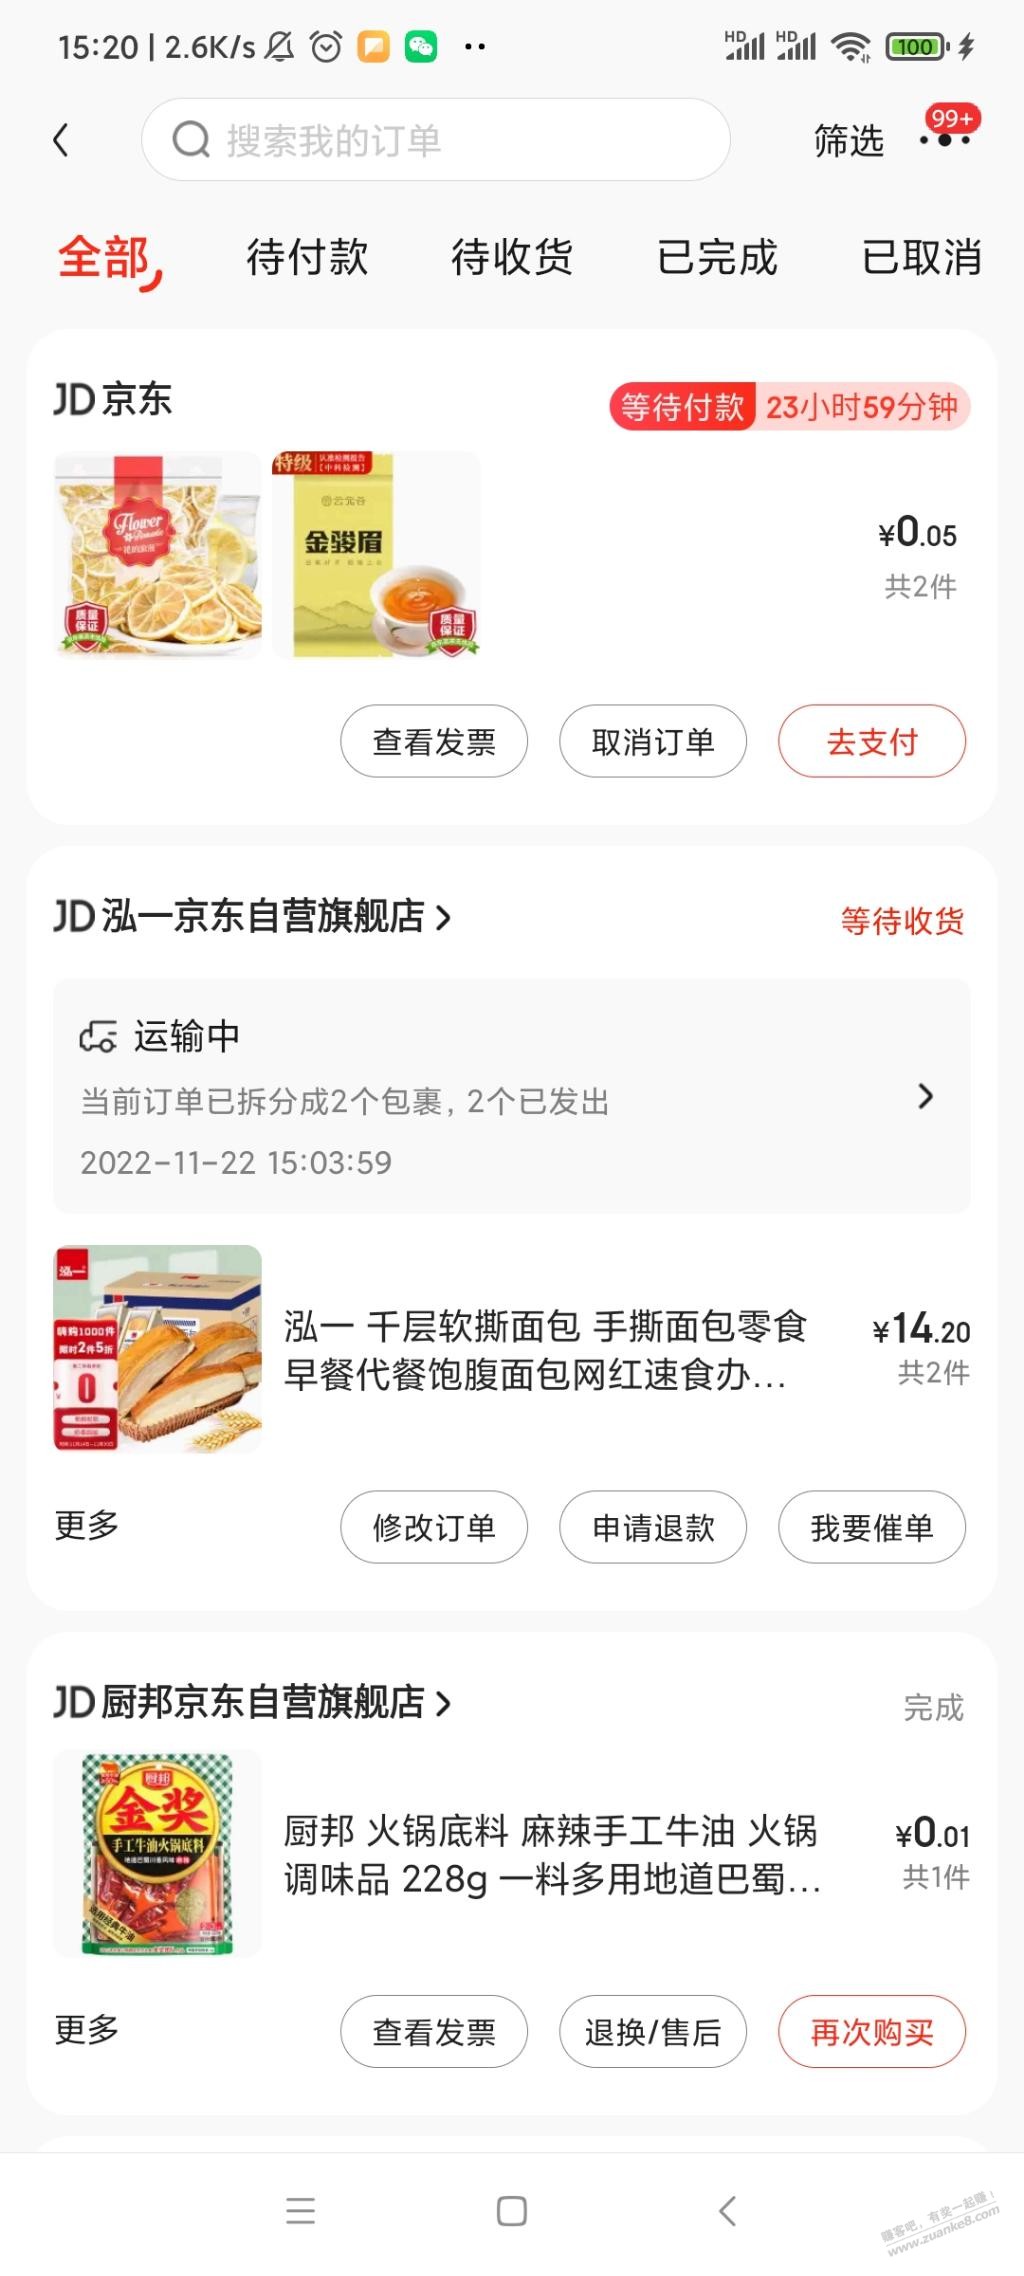 0买100g一袋自营柠檬片和茶-惠小助(52huixz.com)